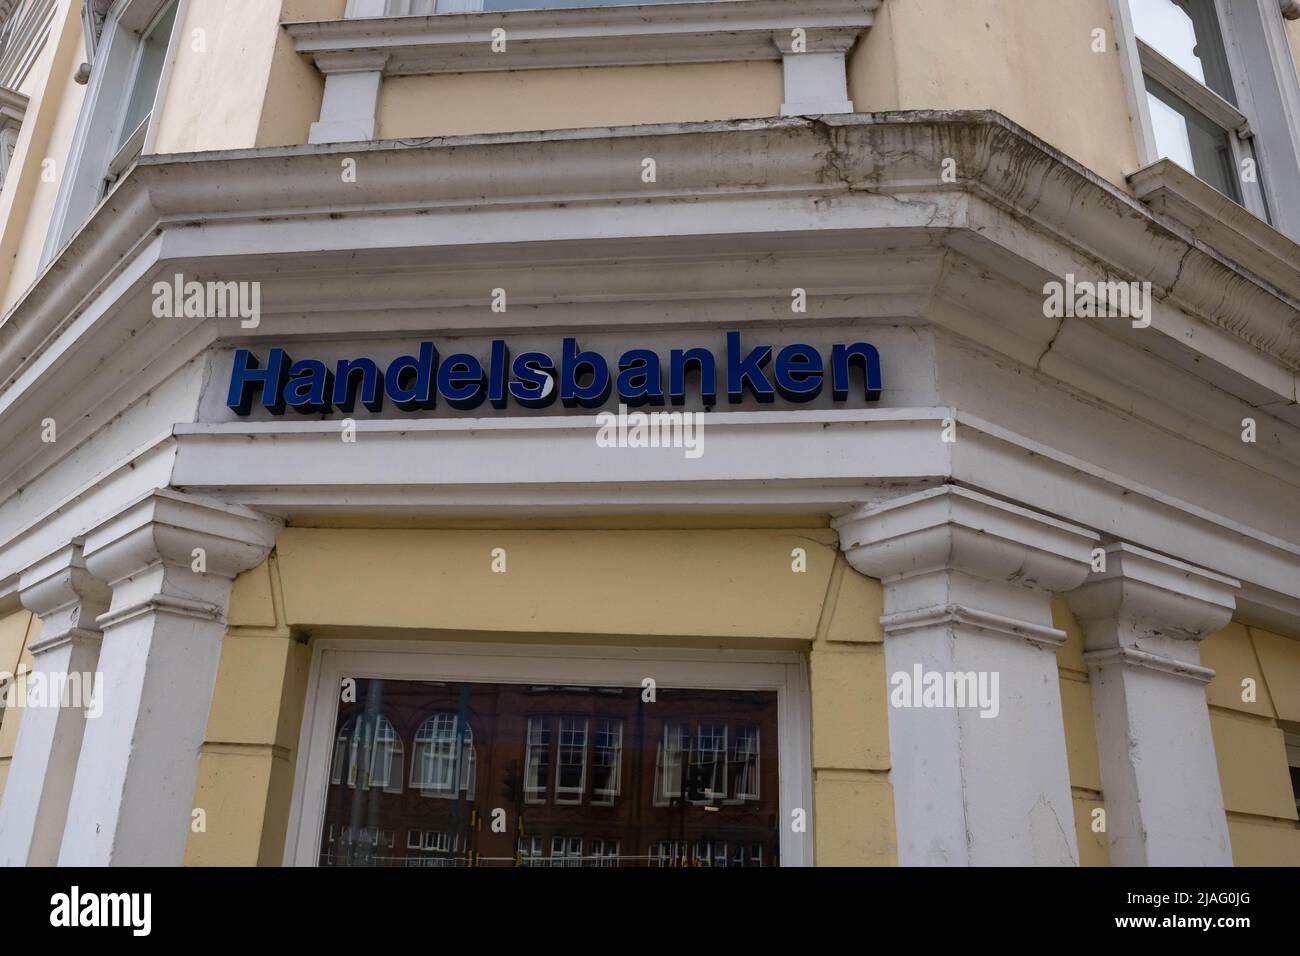 Handelsbanken sign on the corner of the bank buildingforeign bank Stock Photo